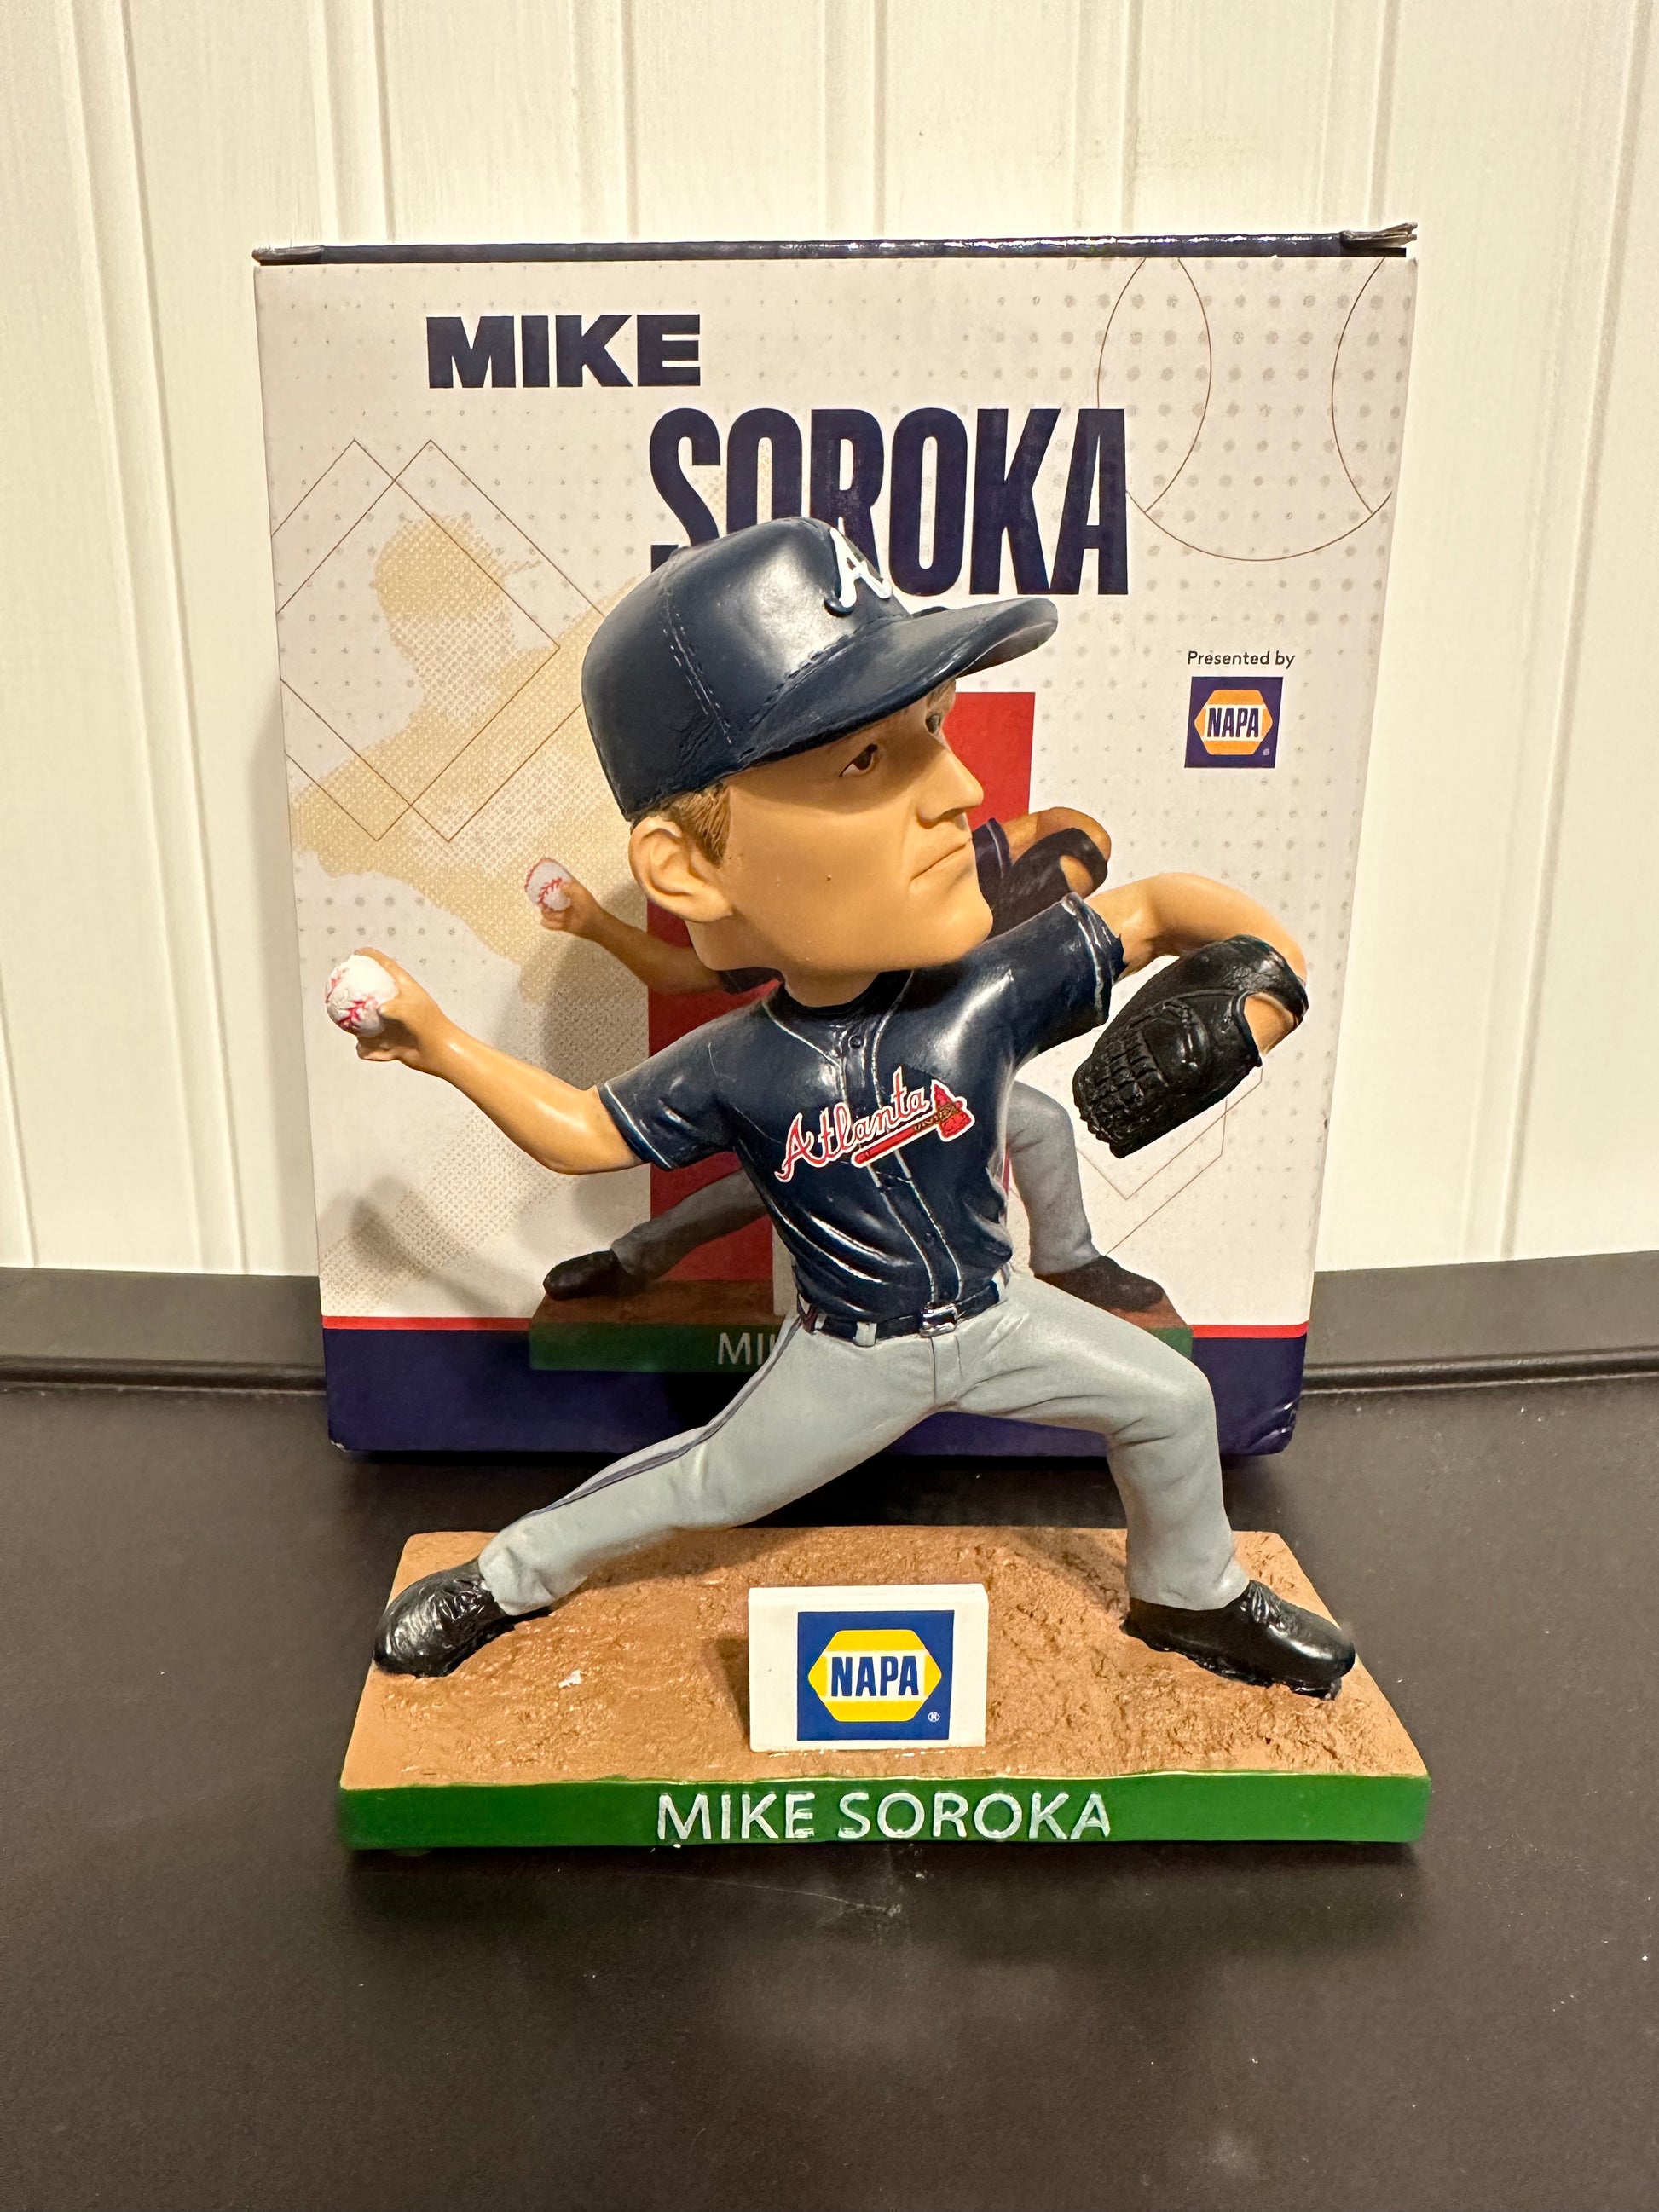 Mike Soroka  Atlanta braves, Atlanta braves baseball, Braves